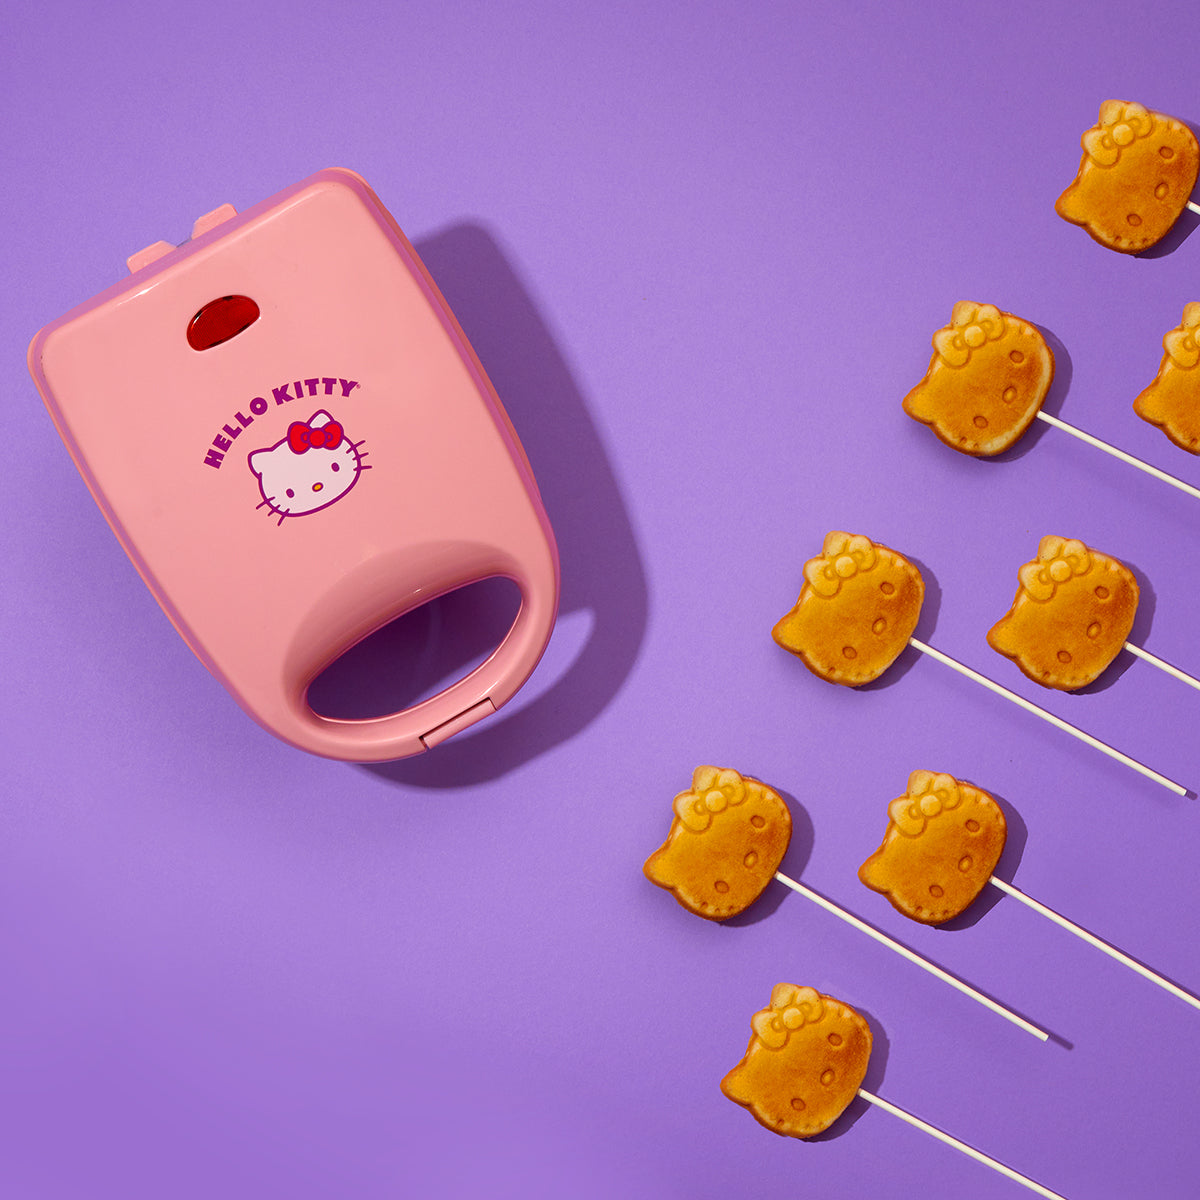 Hello Kitty Cake Pop Maker Home Goods Uncanny Brands LLC   